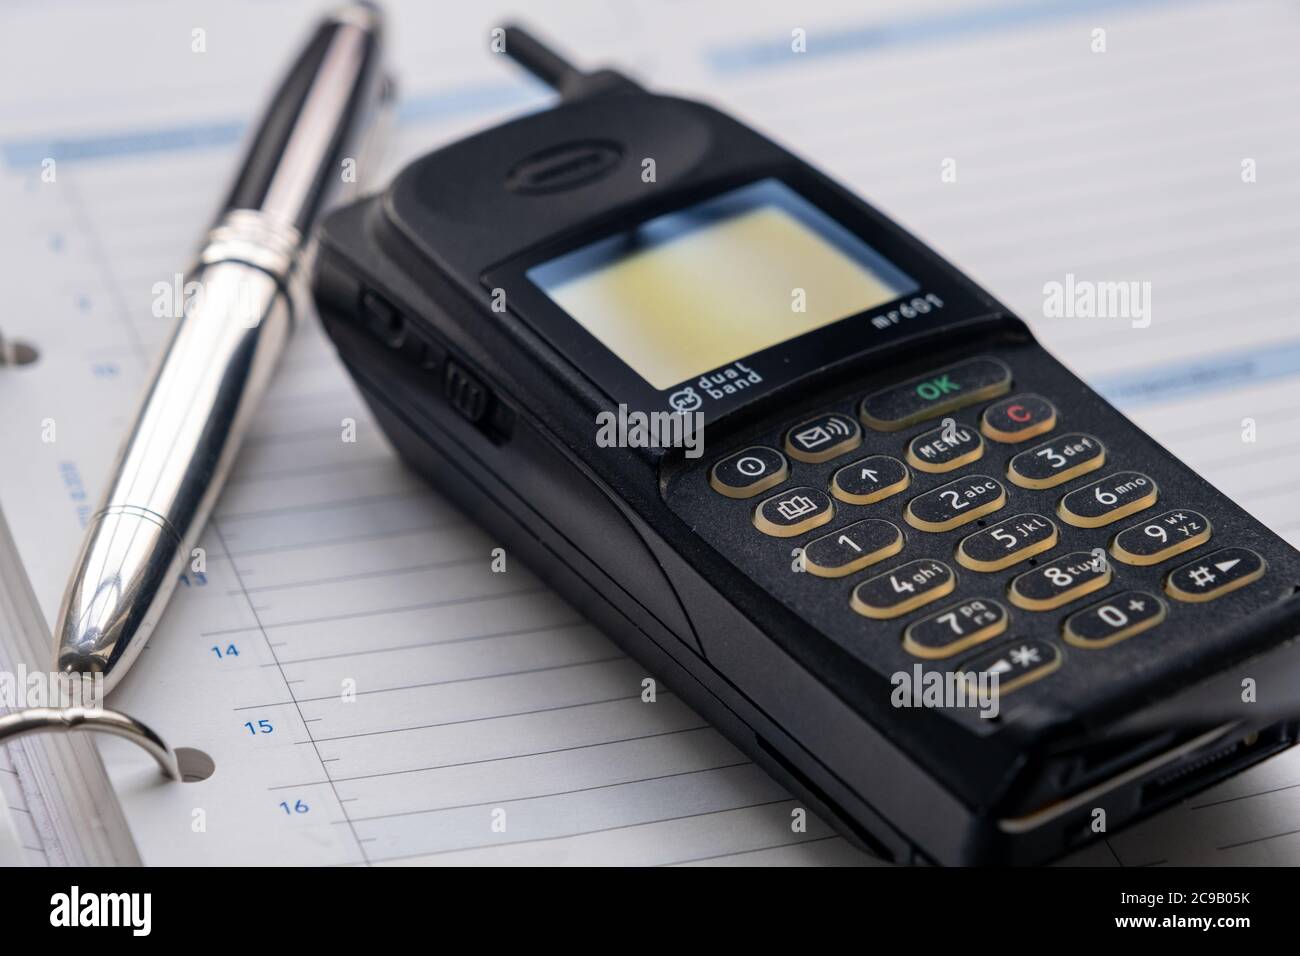 Telefono cellulare degli anni novanta e una penna fontana d'argento che si trova sopra un diario di grande formato. Foto Stock